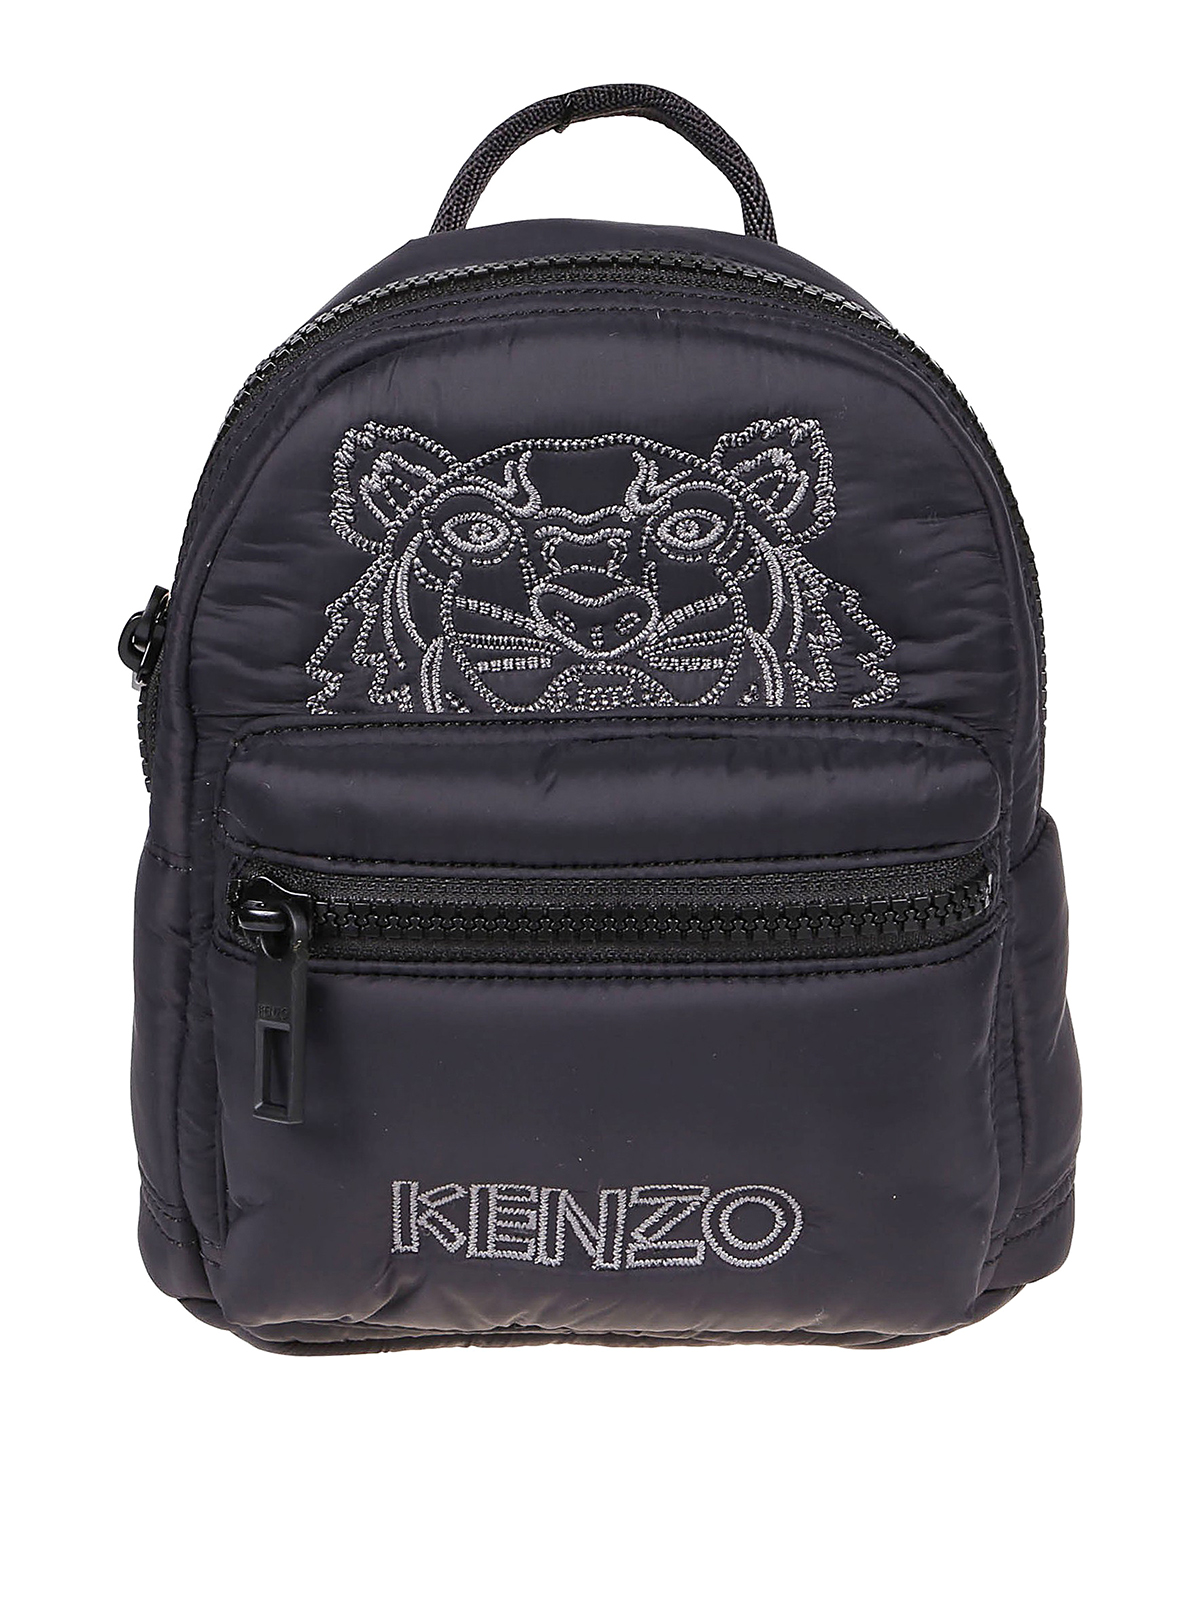 Backpacks Kenzo - Tiger Kampus mini black nylon backpack - F965SF301F3099